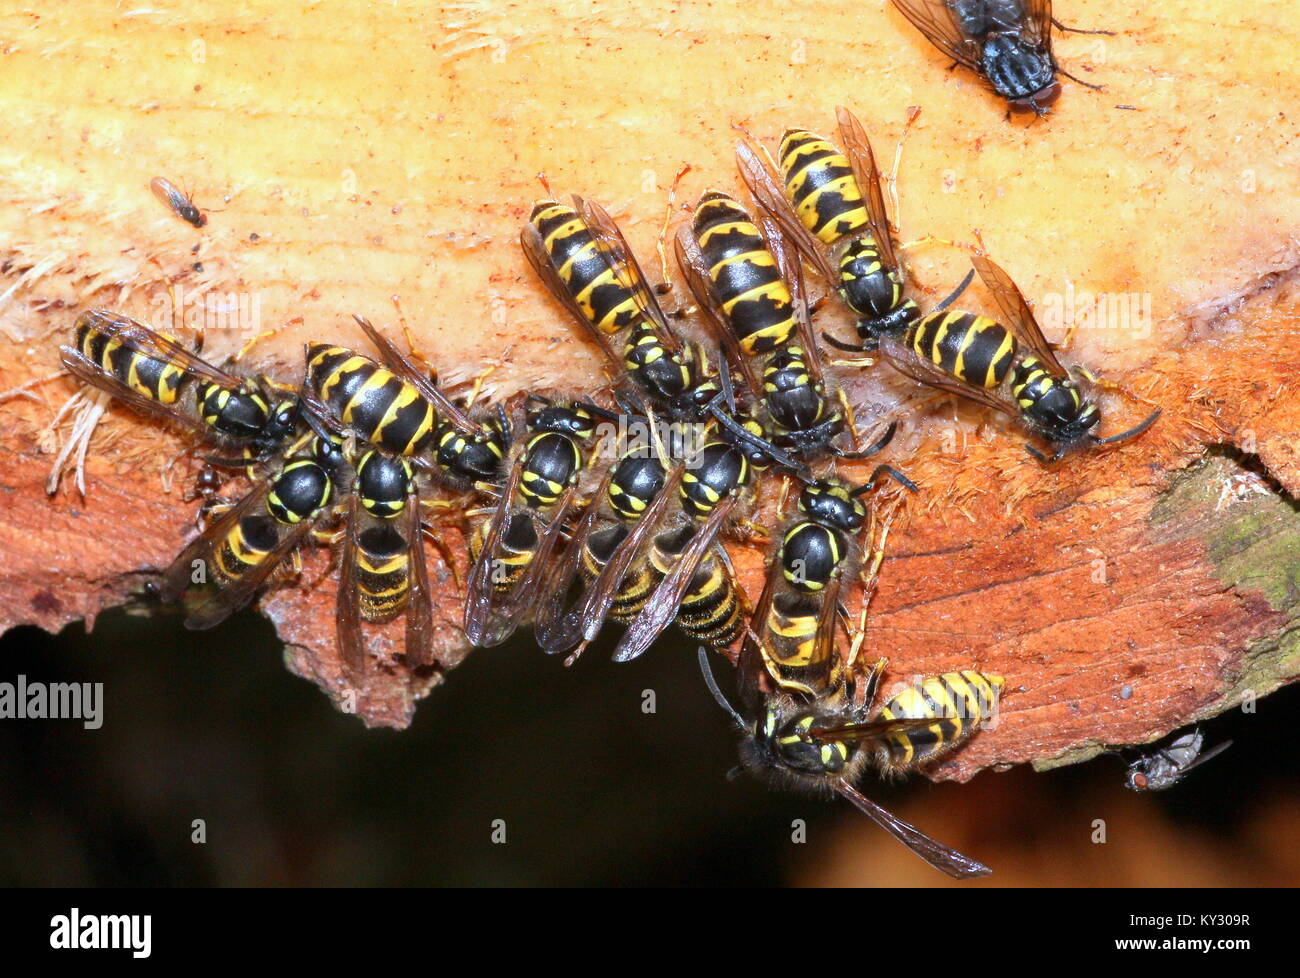 Group of Common European wasps (Vespula vulgaris) feeding on on pine tree resin. Stock Photo